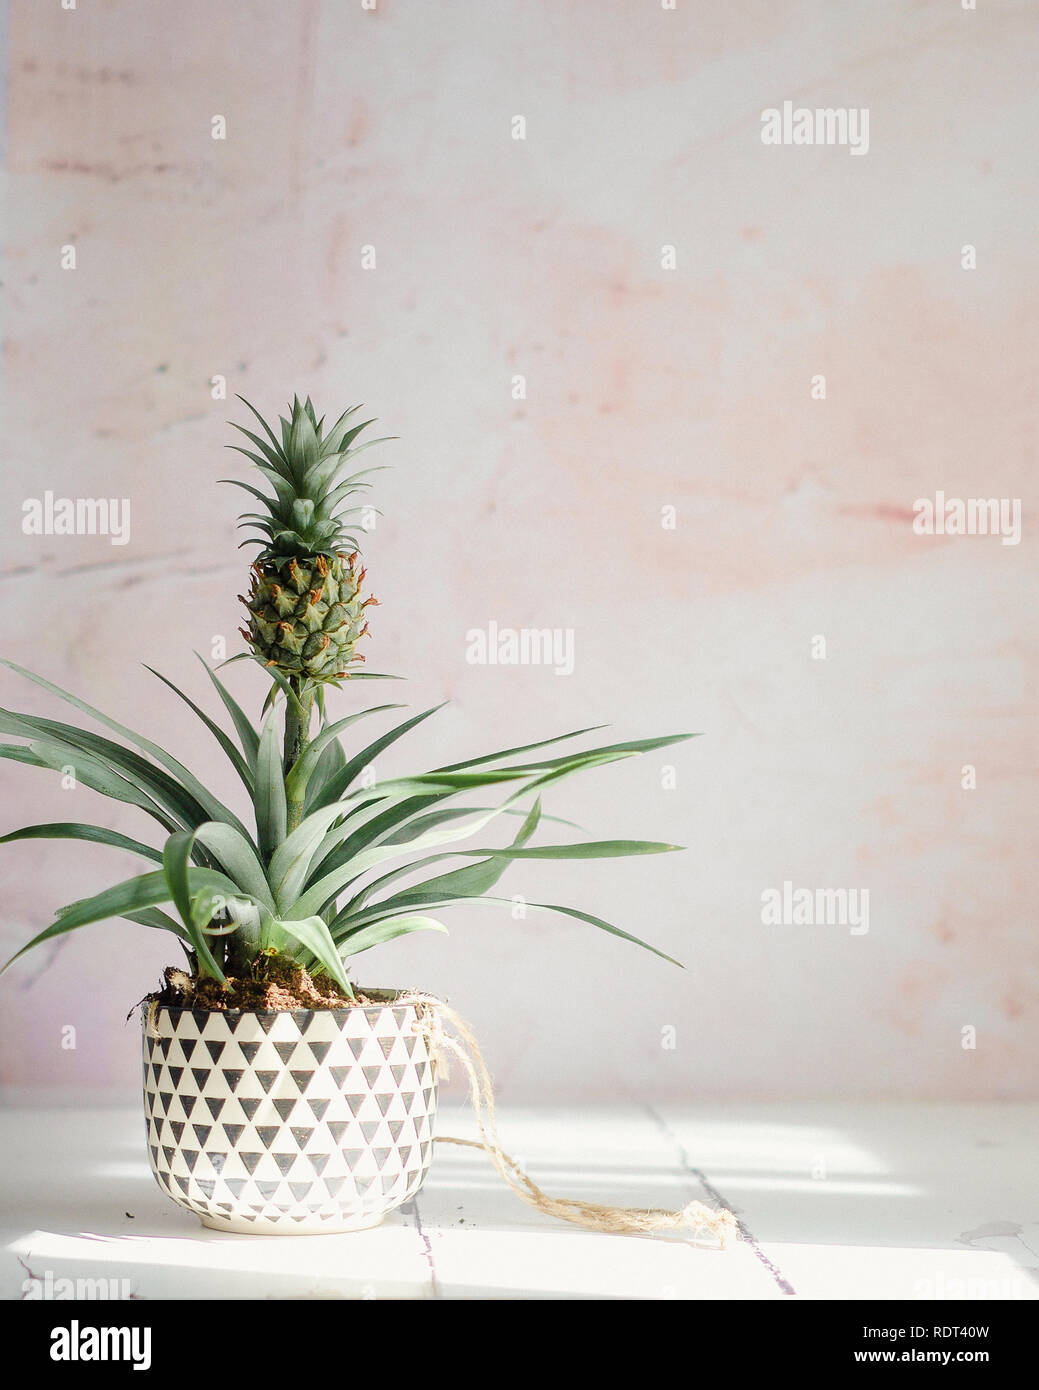 Dekorative Ananaspflanze, auch als bromelie bekannt, in einer Pflanzmaschine mit einem schwarzen und weißen geometrischen Muster. Auf weißem Holz vor einem rosa Hintergrund. Stockfoto